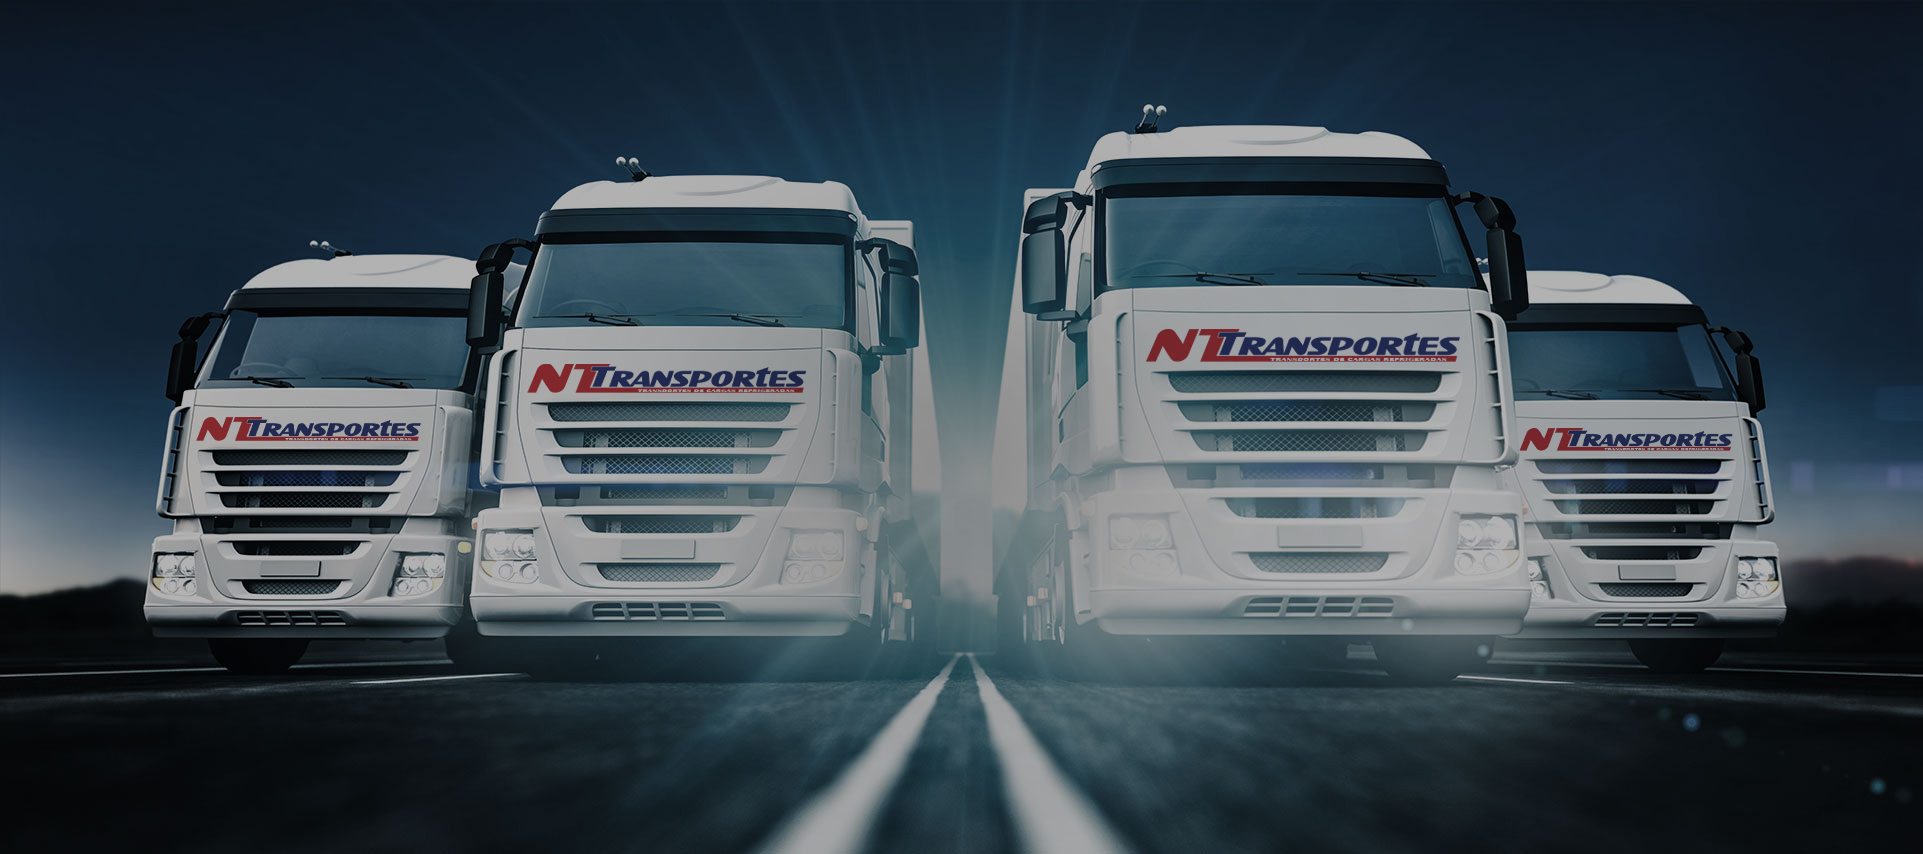 NT Transportes | Especializada em Transportes de Cargas Refrigeradas - A NT  Transportes atua no mercado de cargas refrigeradas há mais de 27 anos,  conquistando a confiança de clientes e parceiros nos